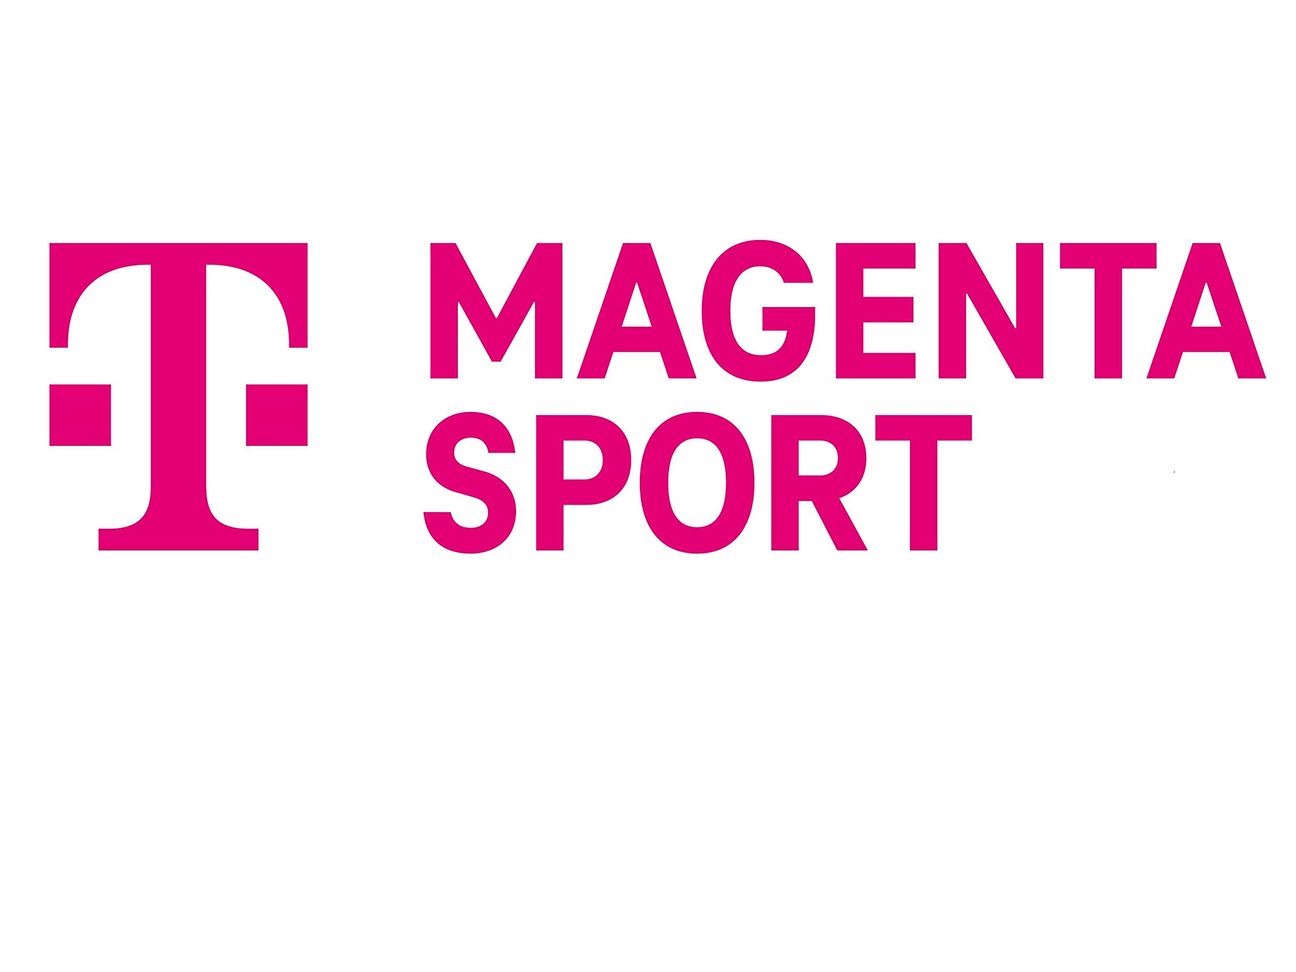 MagentaSport erweitert Fußball-Angebot erneut Deutsche Telekom